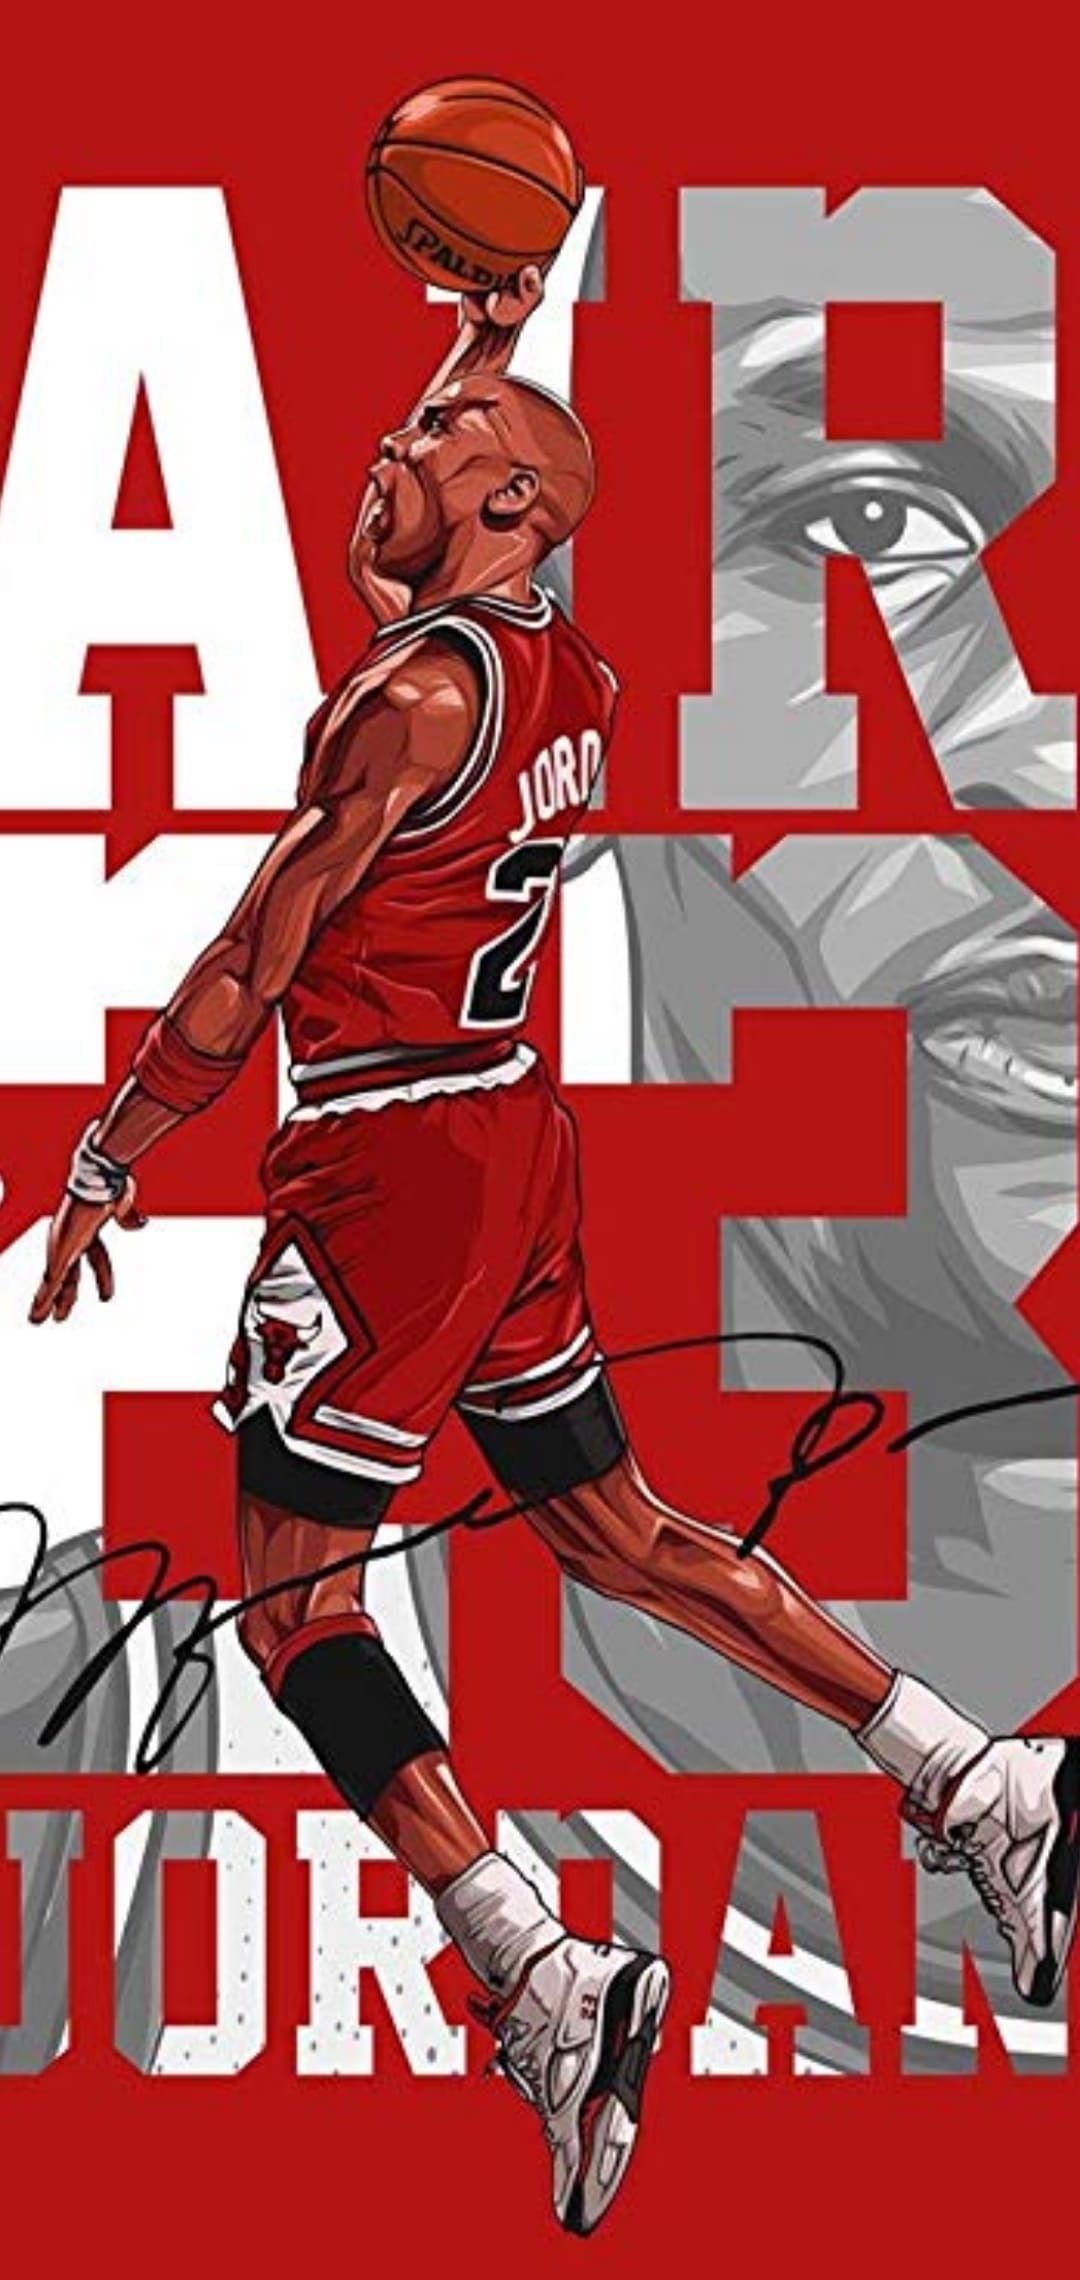 Jordan Wallpaper: Top Best HD Picture of Michael Jordan ( 2020 )